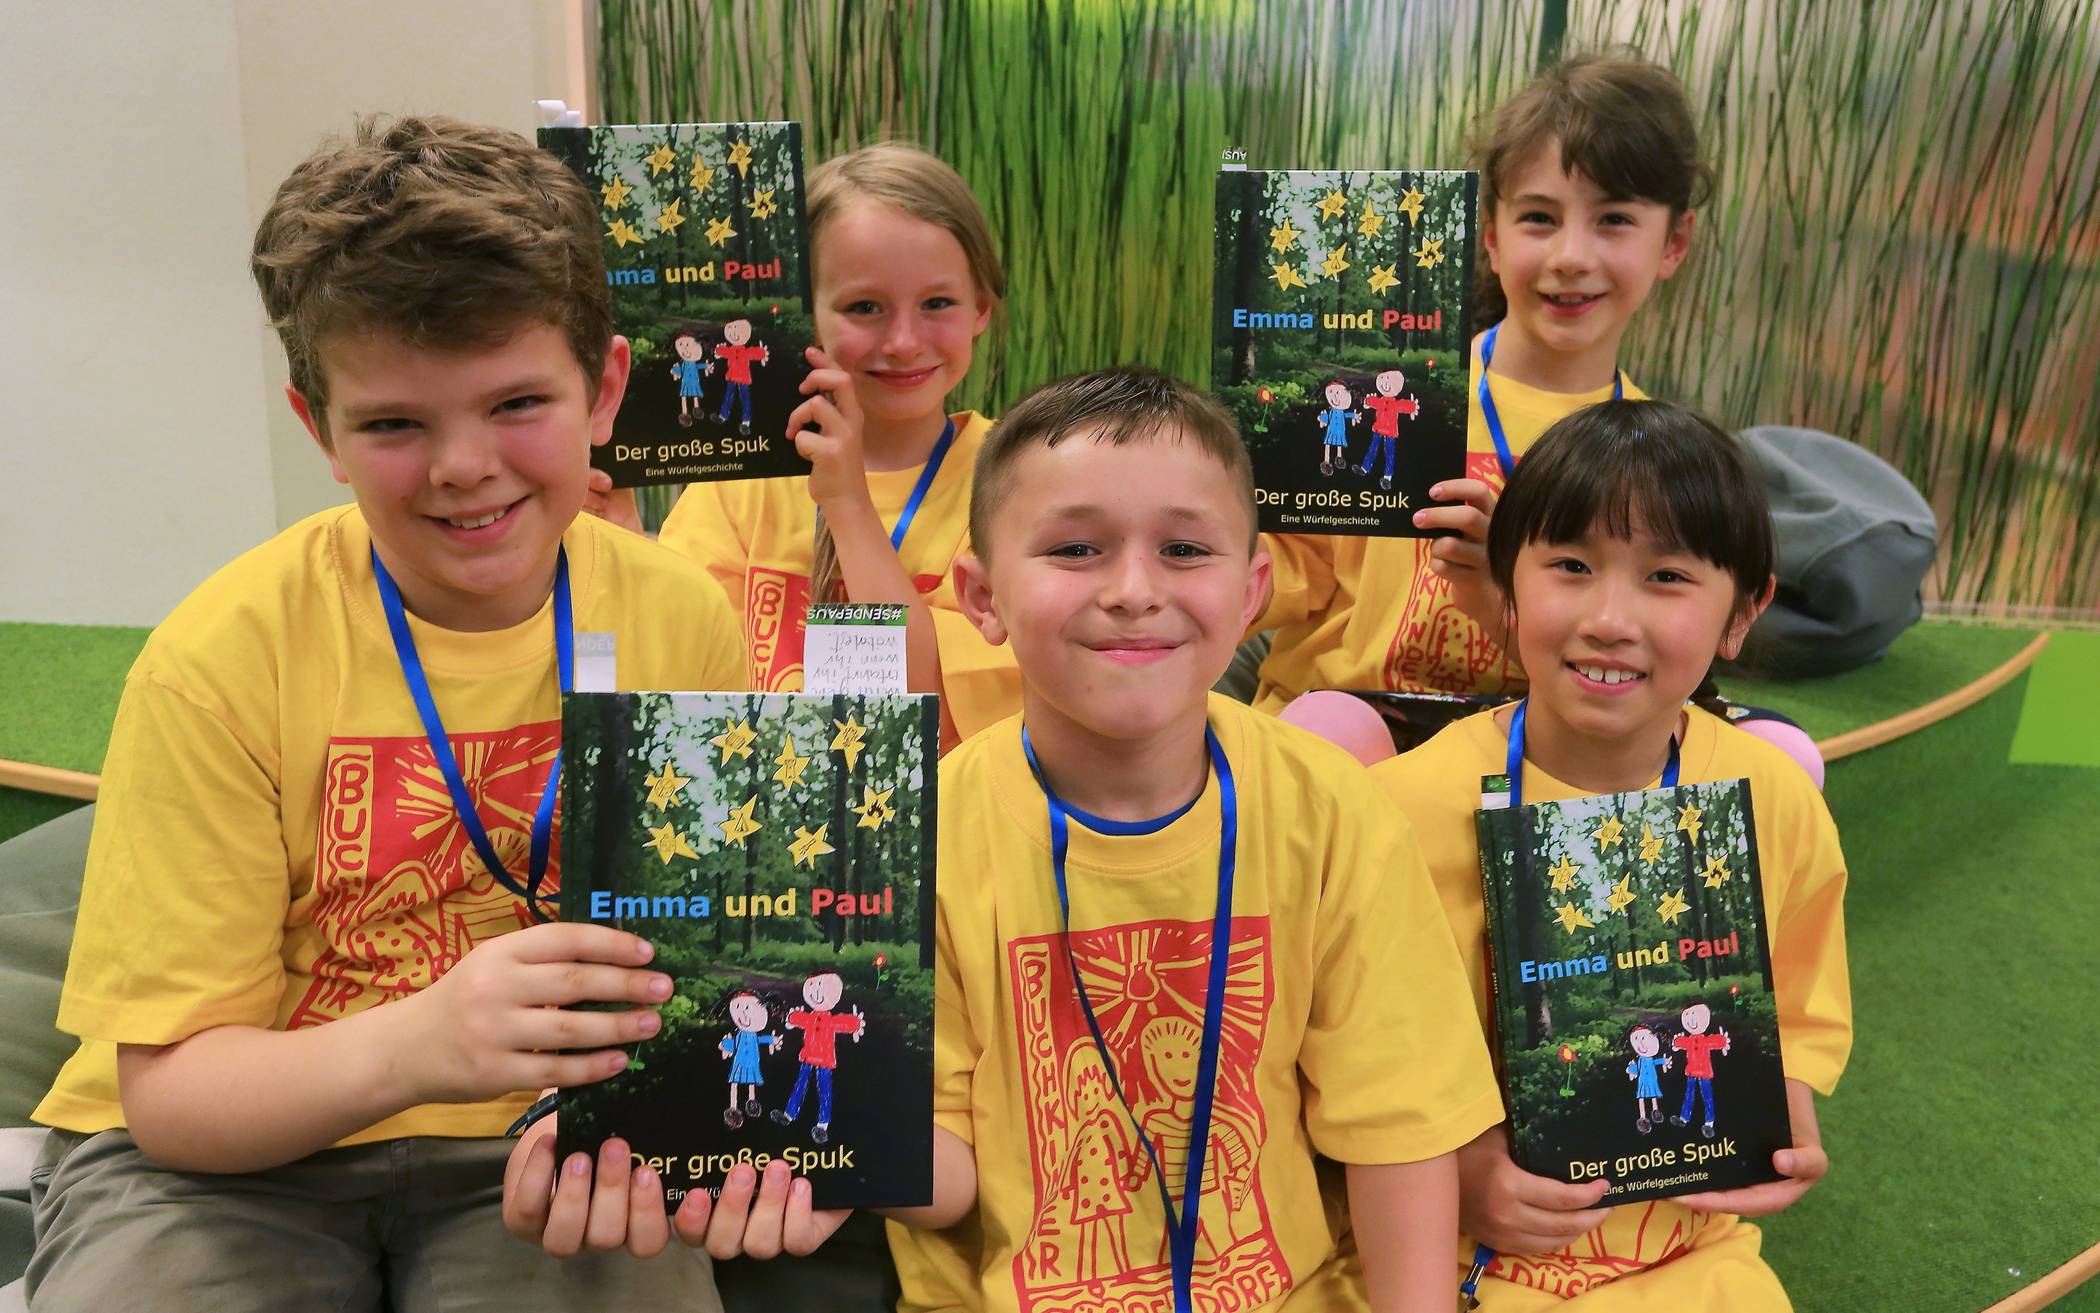  (V. l.) Richard (10 Jahre), Leah (8 Jahre), Berin (8 Jahre), Mila (8 Jahre) und Thu Hien (8 Jahre) stellten ihr Buch "Emma und Paul - Der große Spuk" vor. 